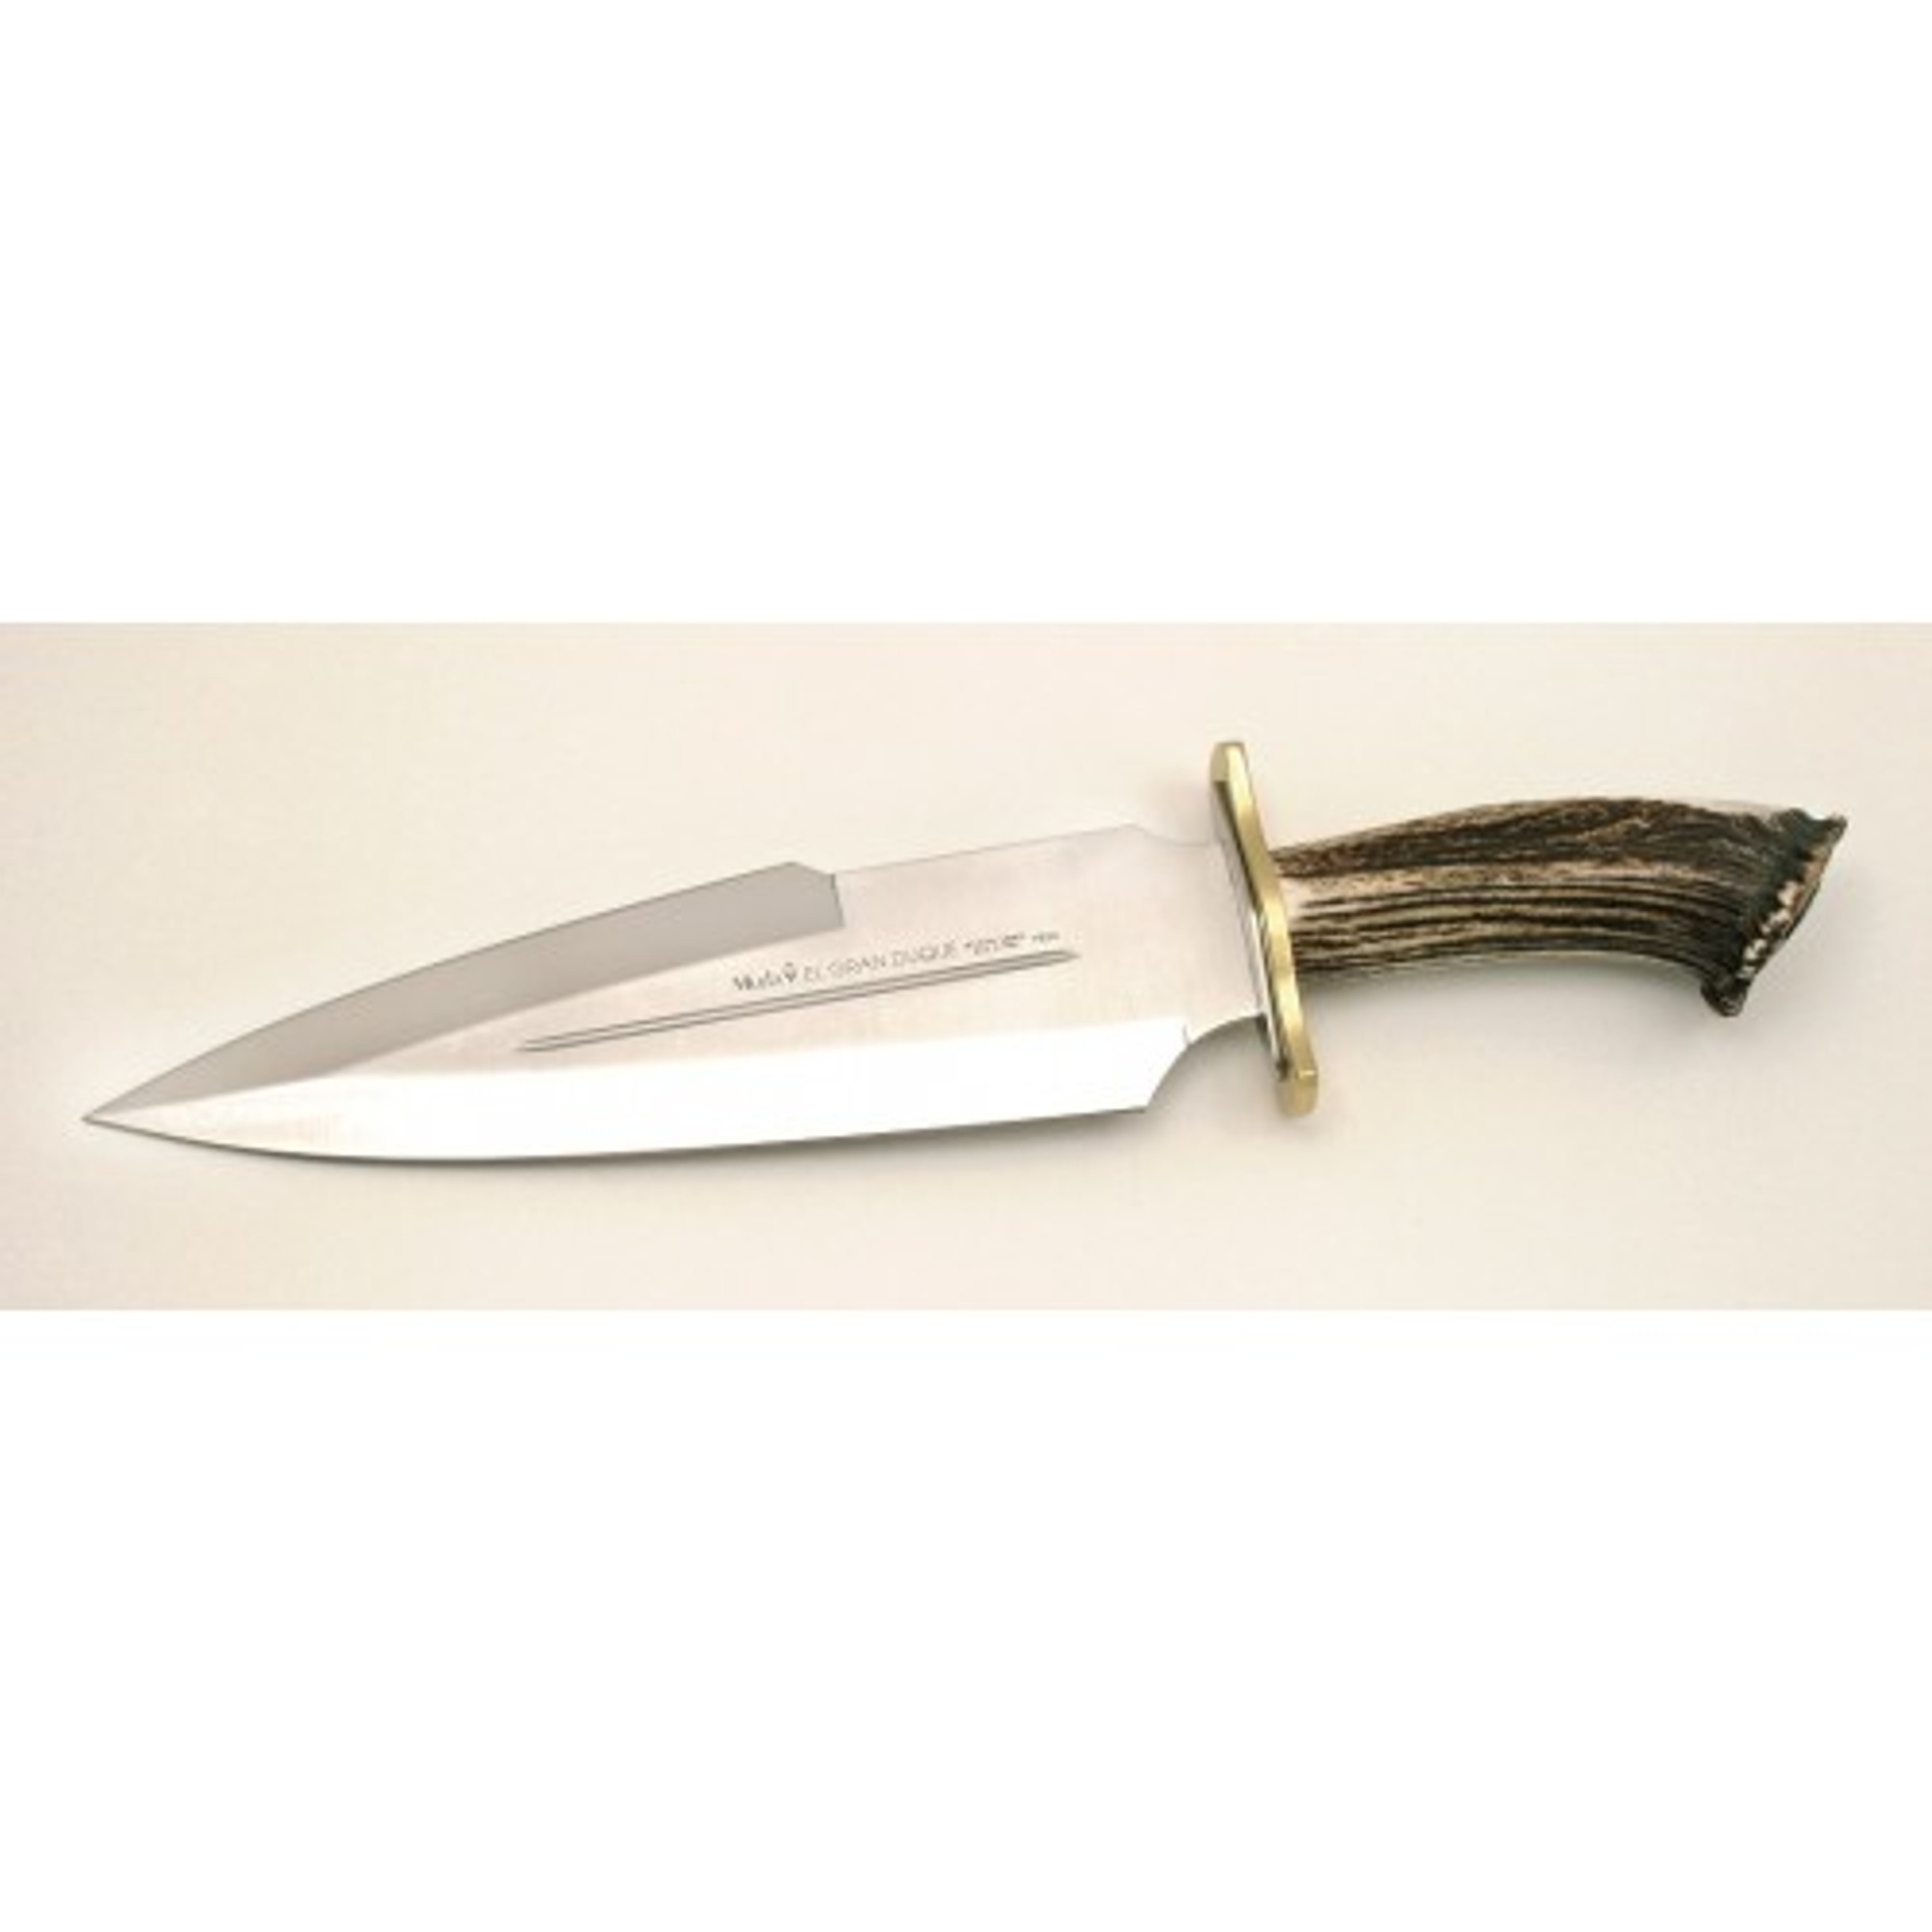 MUELA DUQUE-25S, X50CrMoV15, 10" Fixed Blade Hunting Knife, Crown Deer Horn Handle